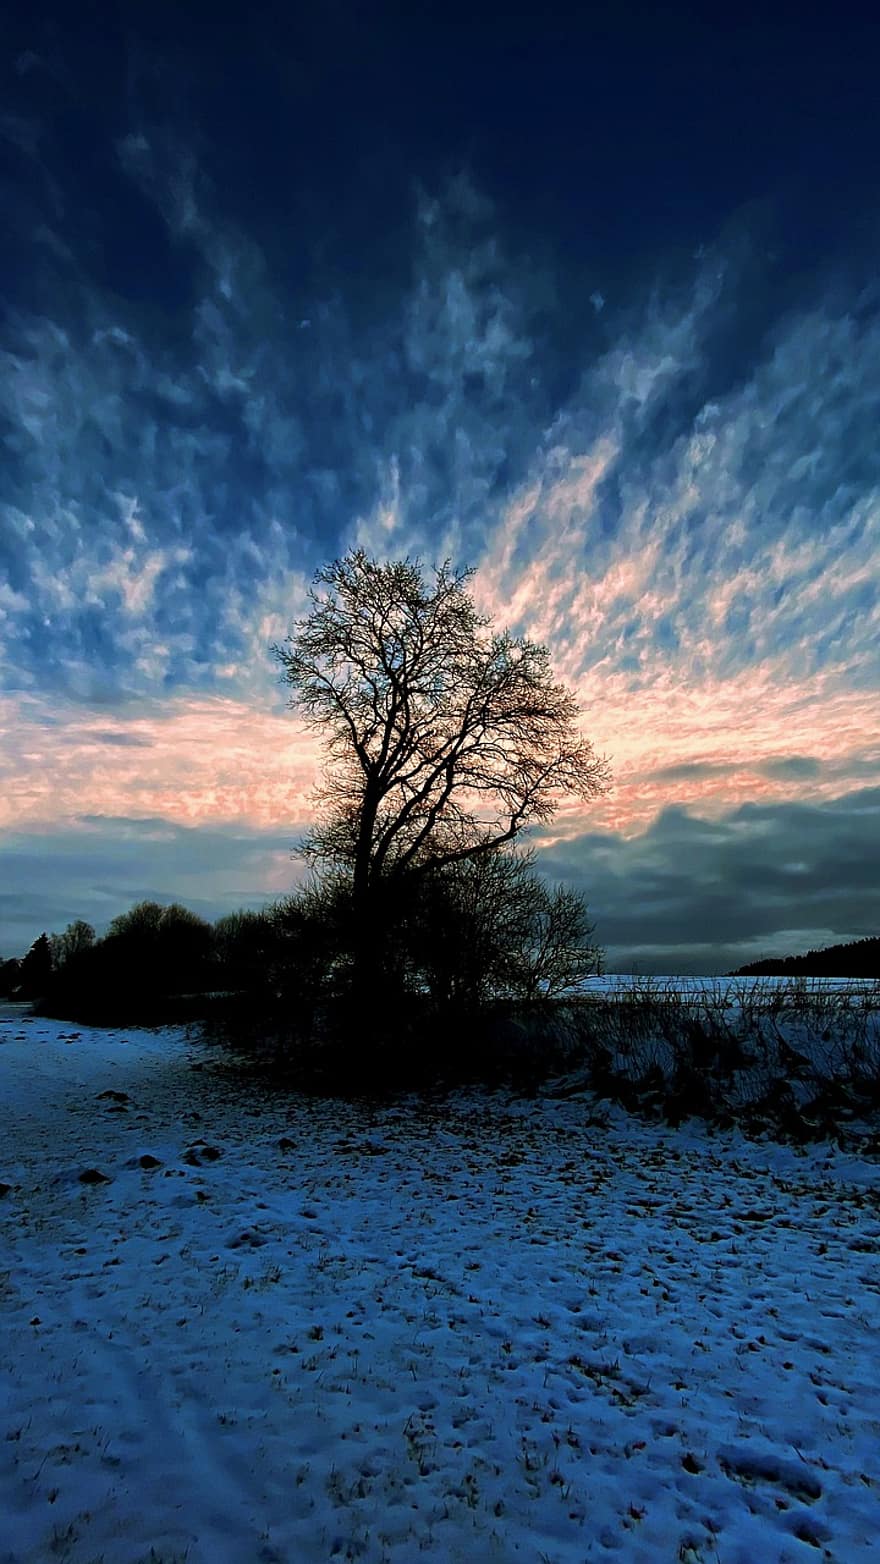 træ, vinterlandskab, vinter, sne, humør, aften atmosfære, himmel, skyer, natur, lys, blå